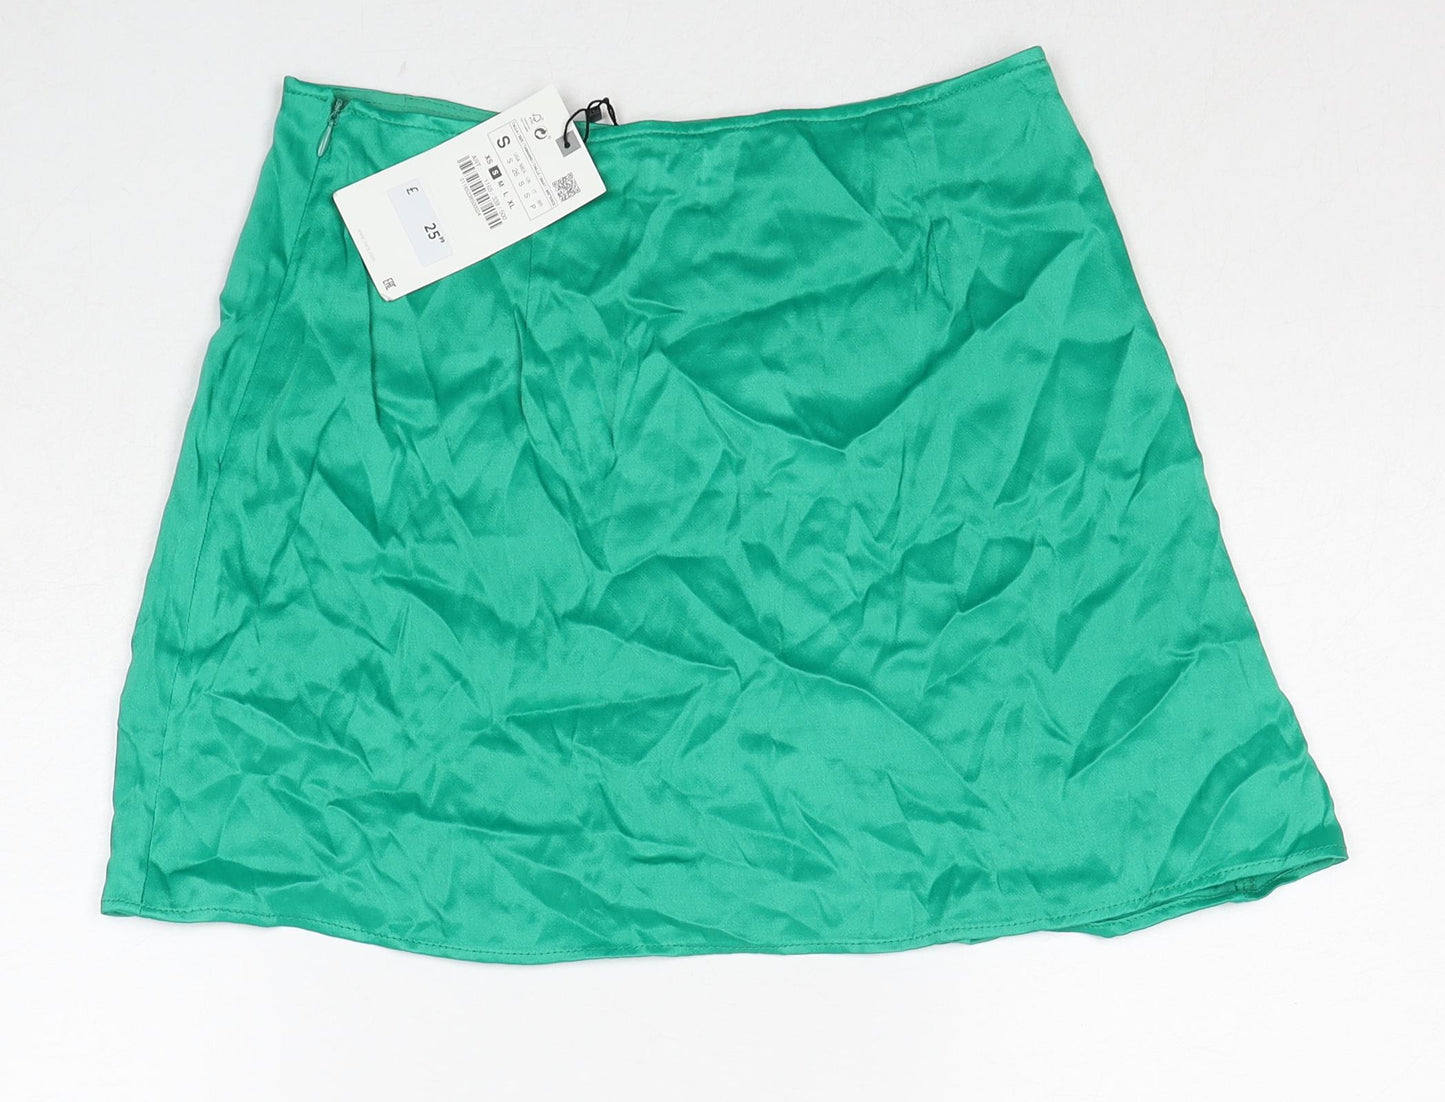 Zara Womens Green Polyester Skort Size S Zip